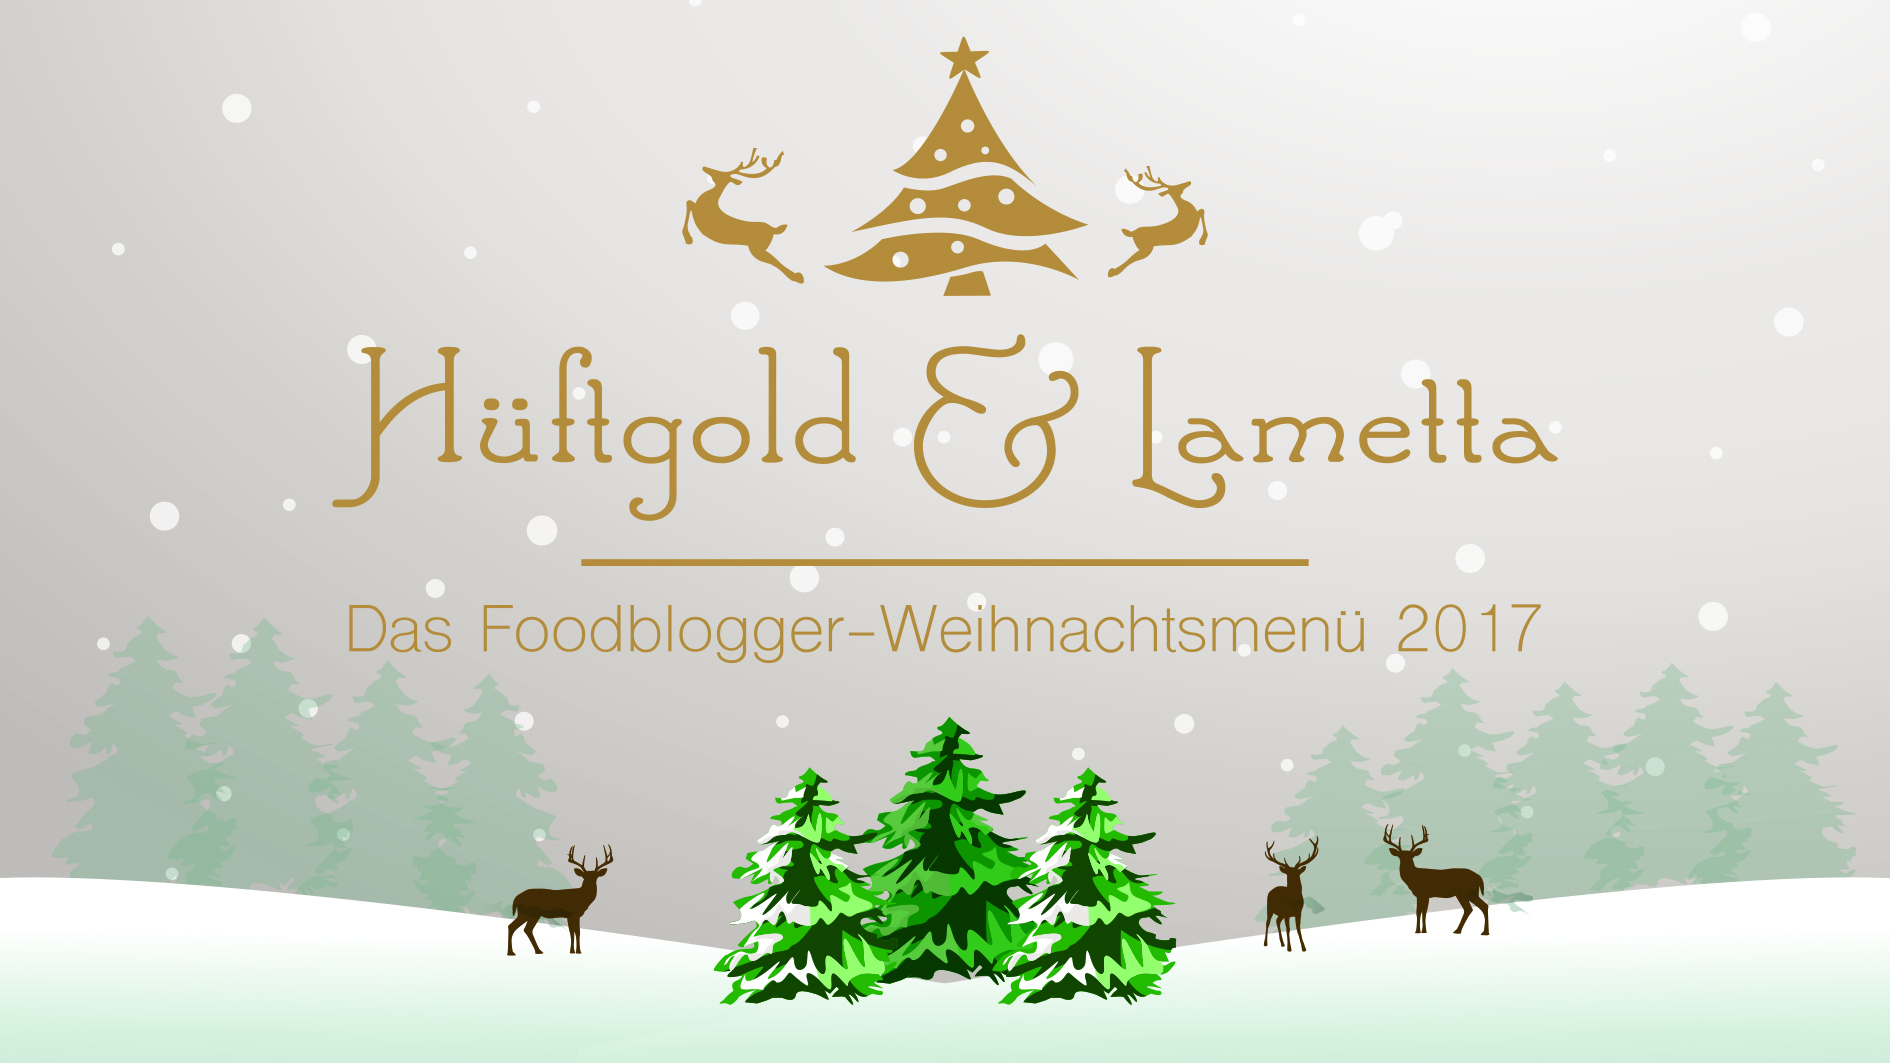 Hüftgold & Lametta - Das Foodblogger-Weihnachtsmenü 2017